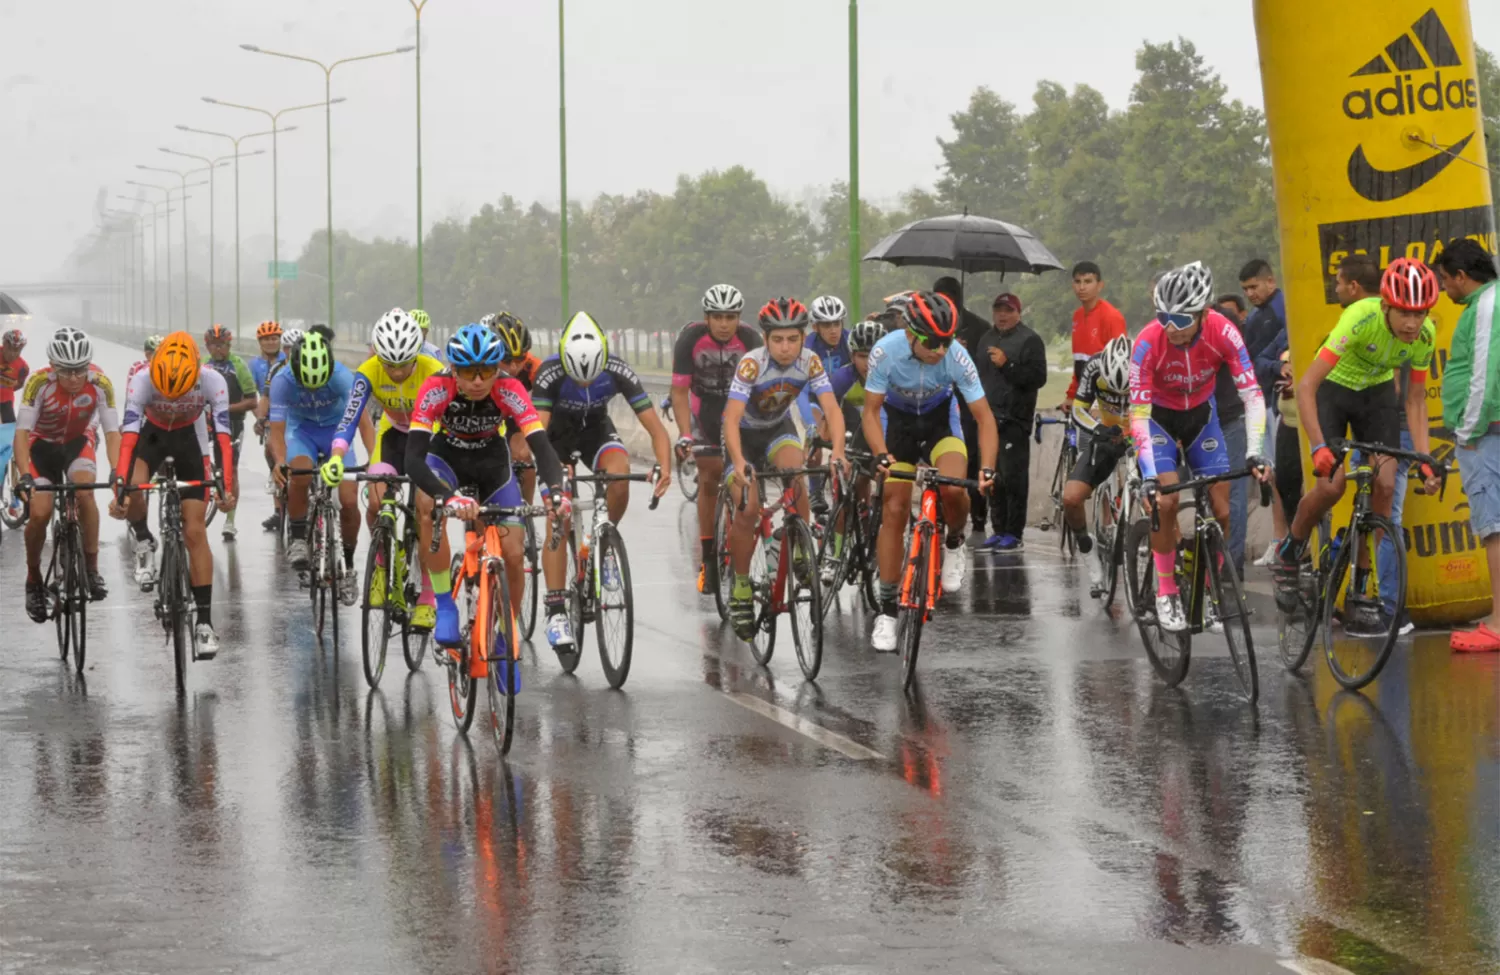 NADA LOS DETUVO. Pese a la lluvia, el ciclismo tucumano vivió una jornada inolvidable por la jerarquía de los competidores.